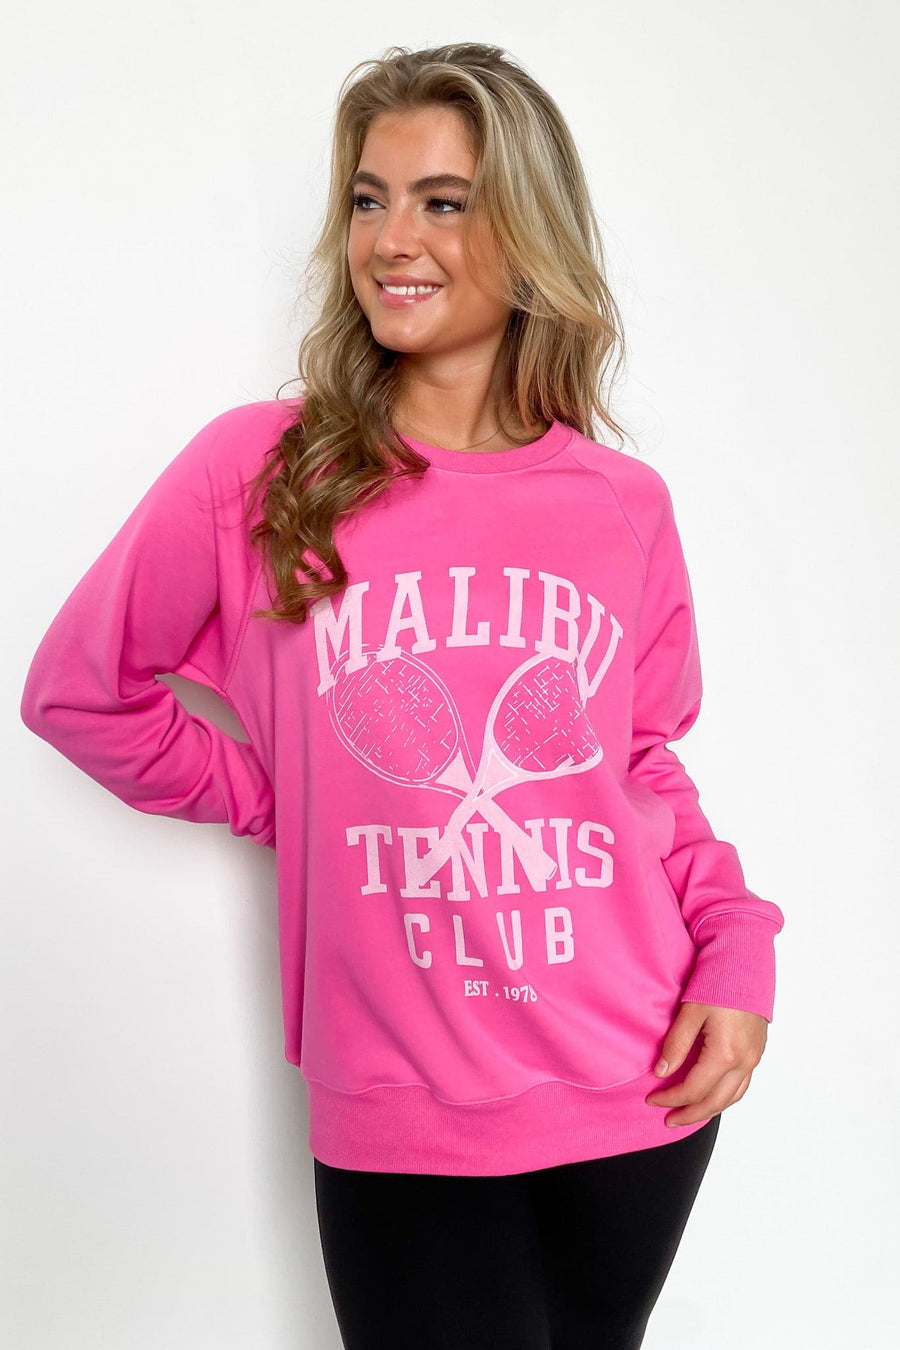  Malibu Tennis Club Graphic Sweatshirt - FINAL SALE - kitchencabinetmagic